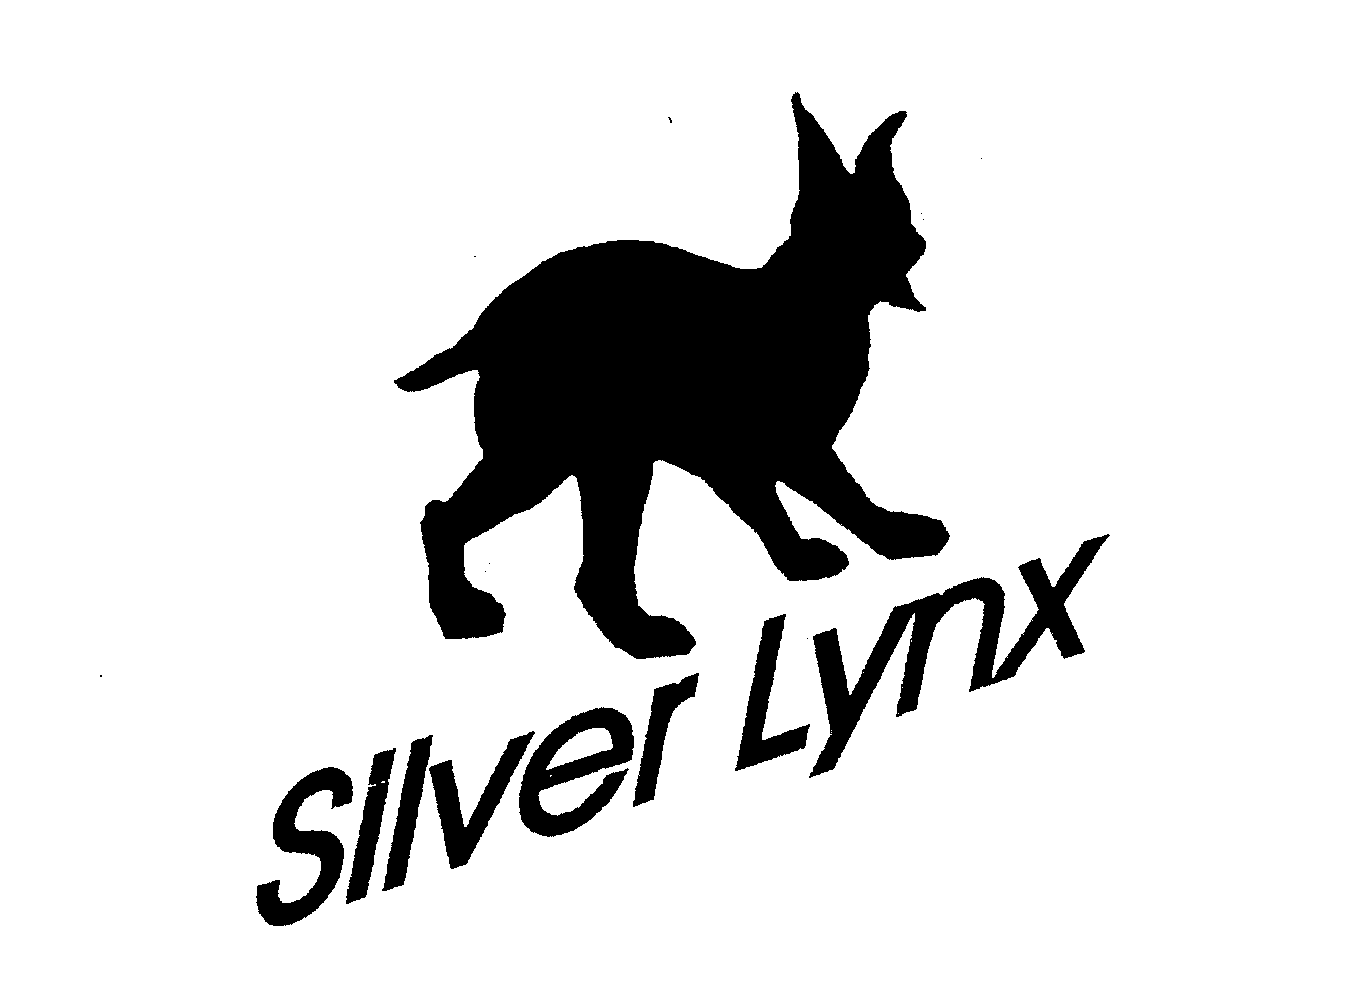  SILVER LYNX